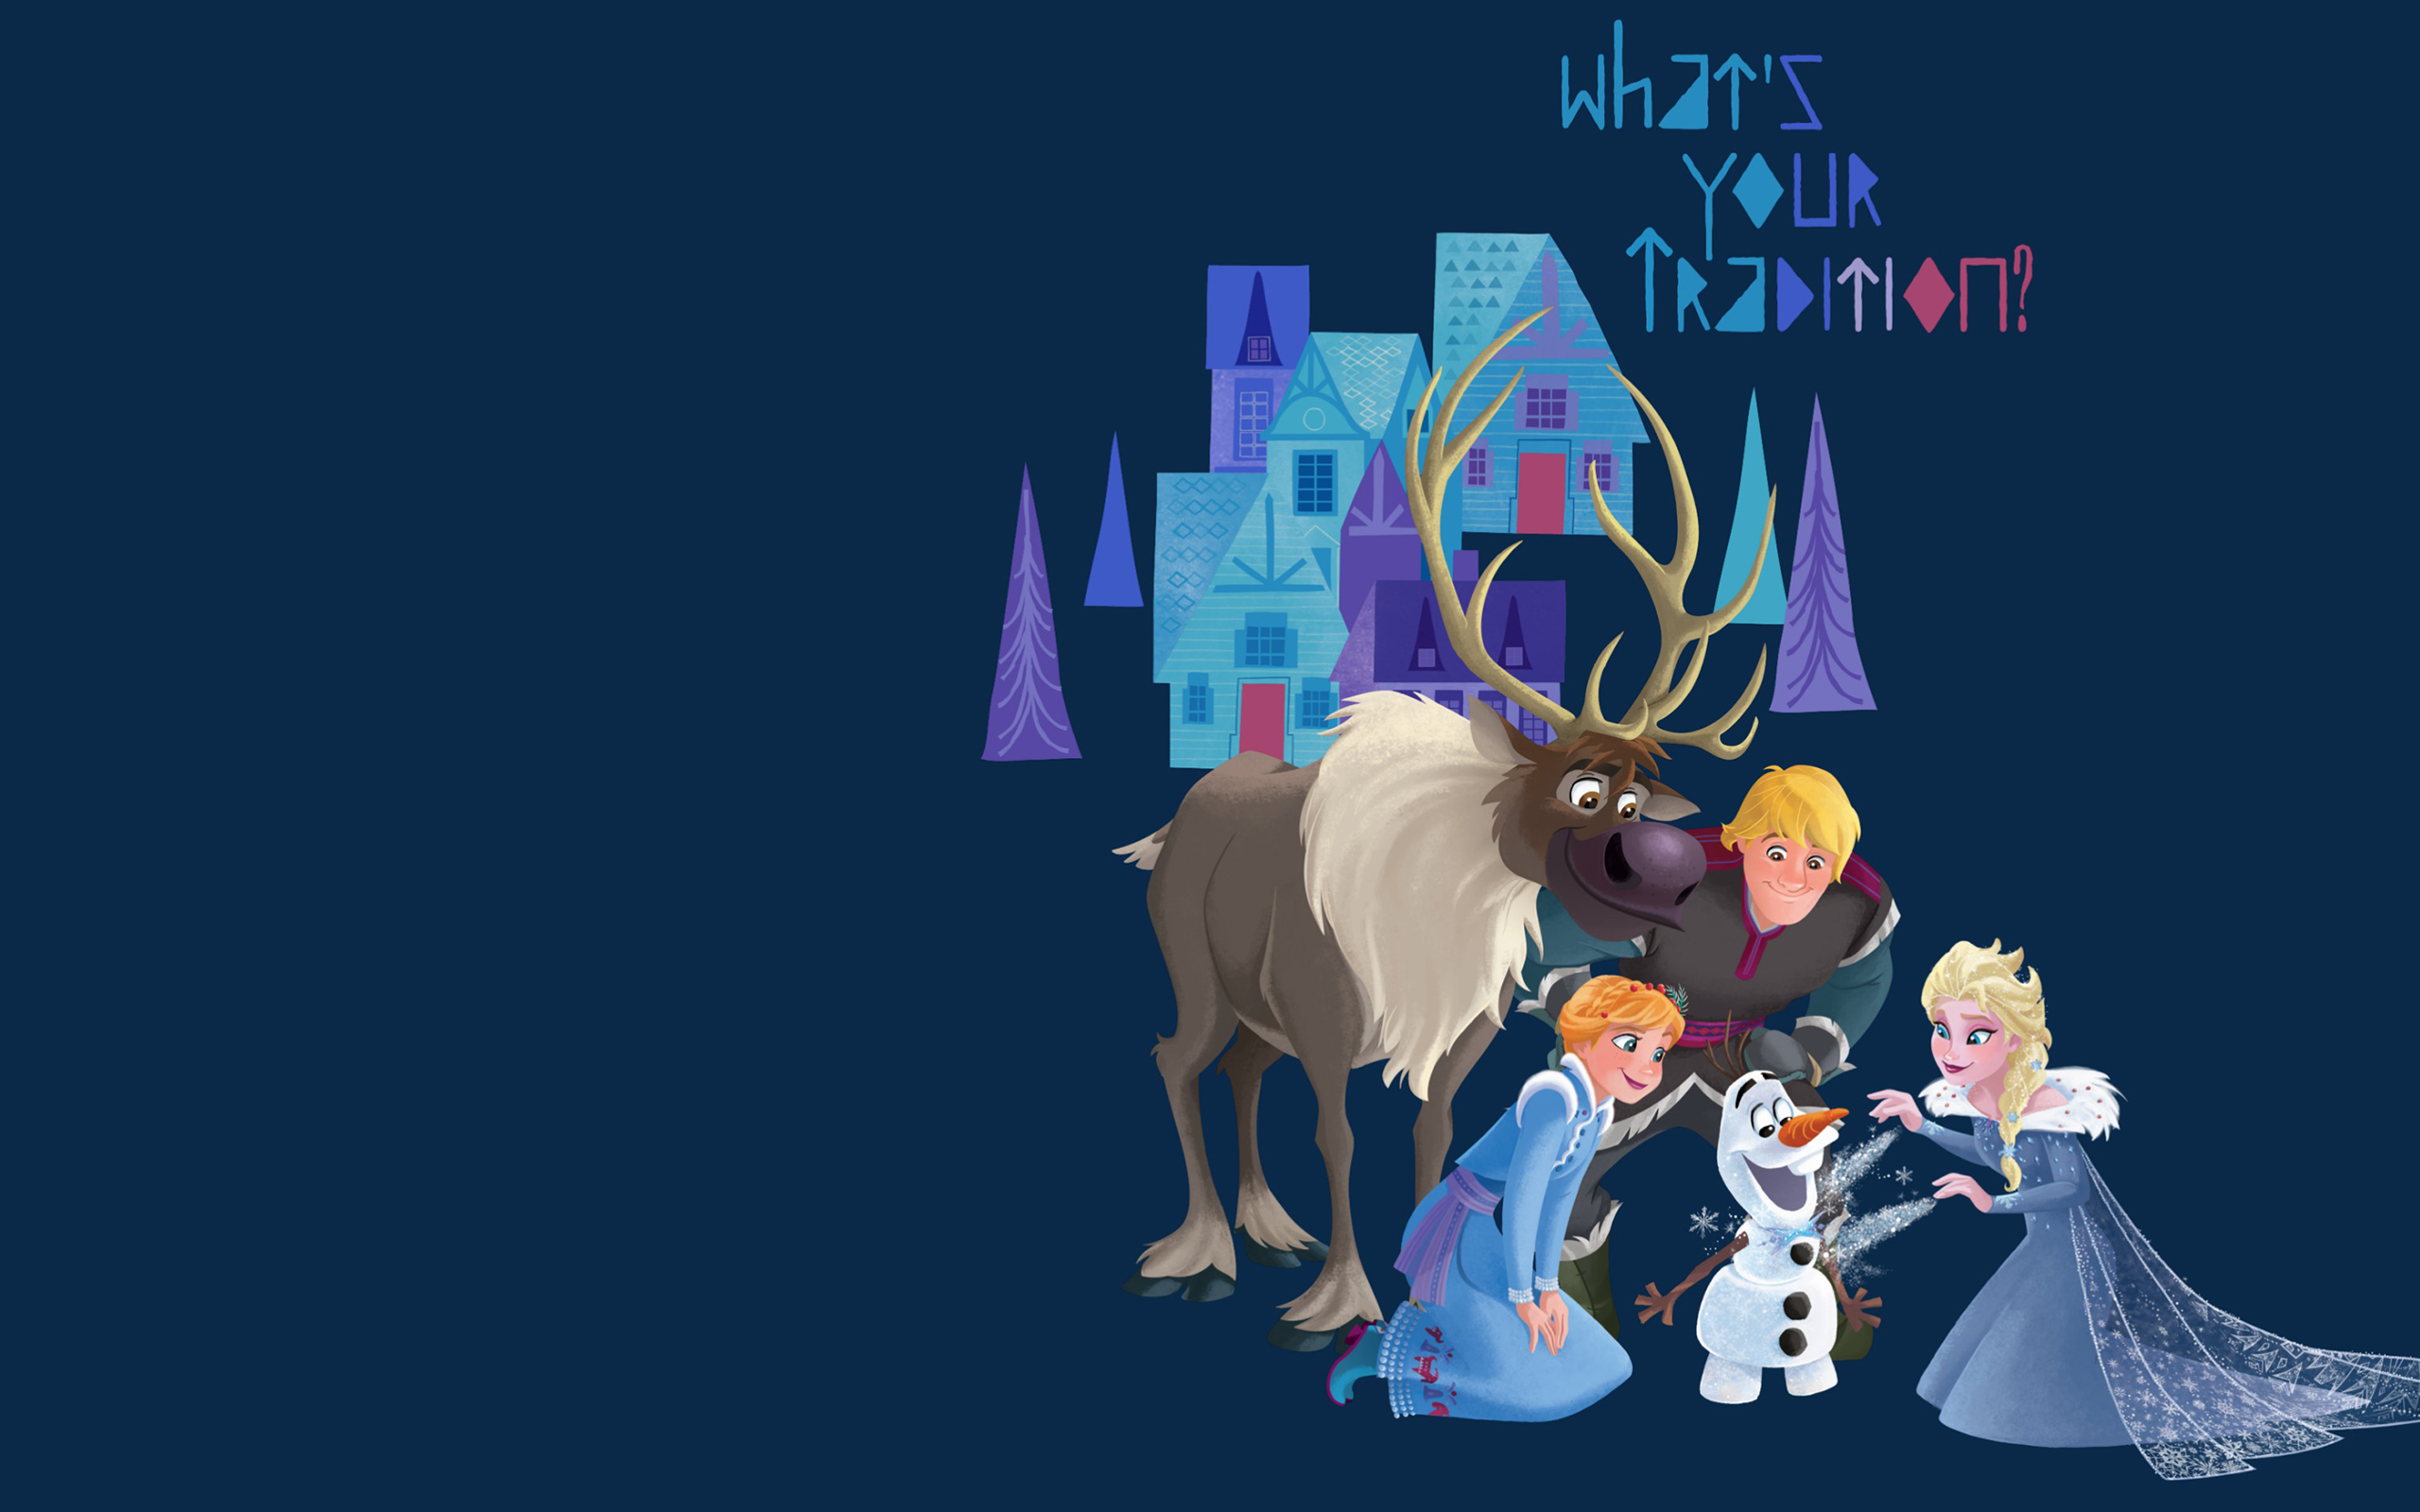 Olafs Frozen Adventure Wallpapers